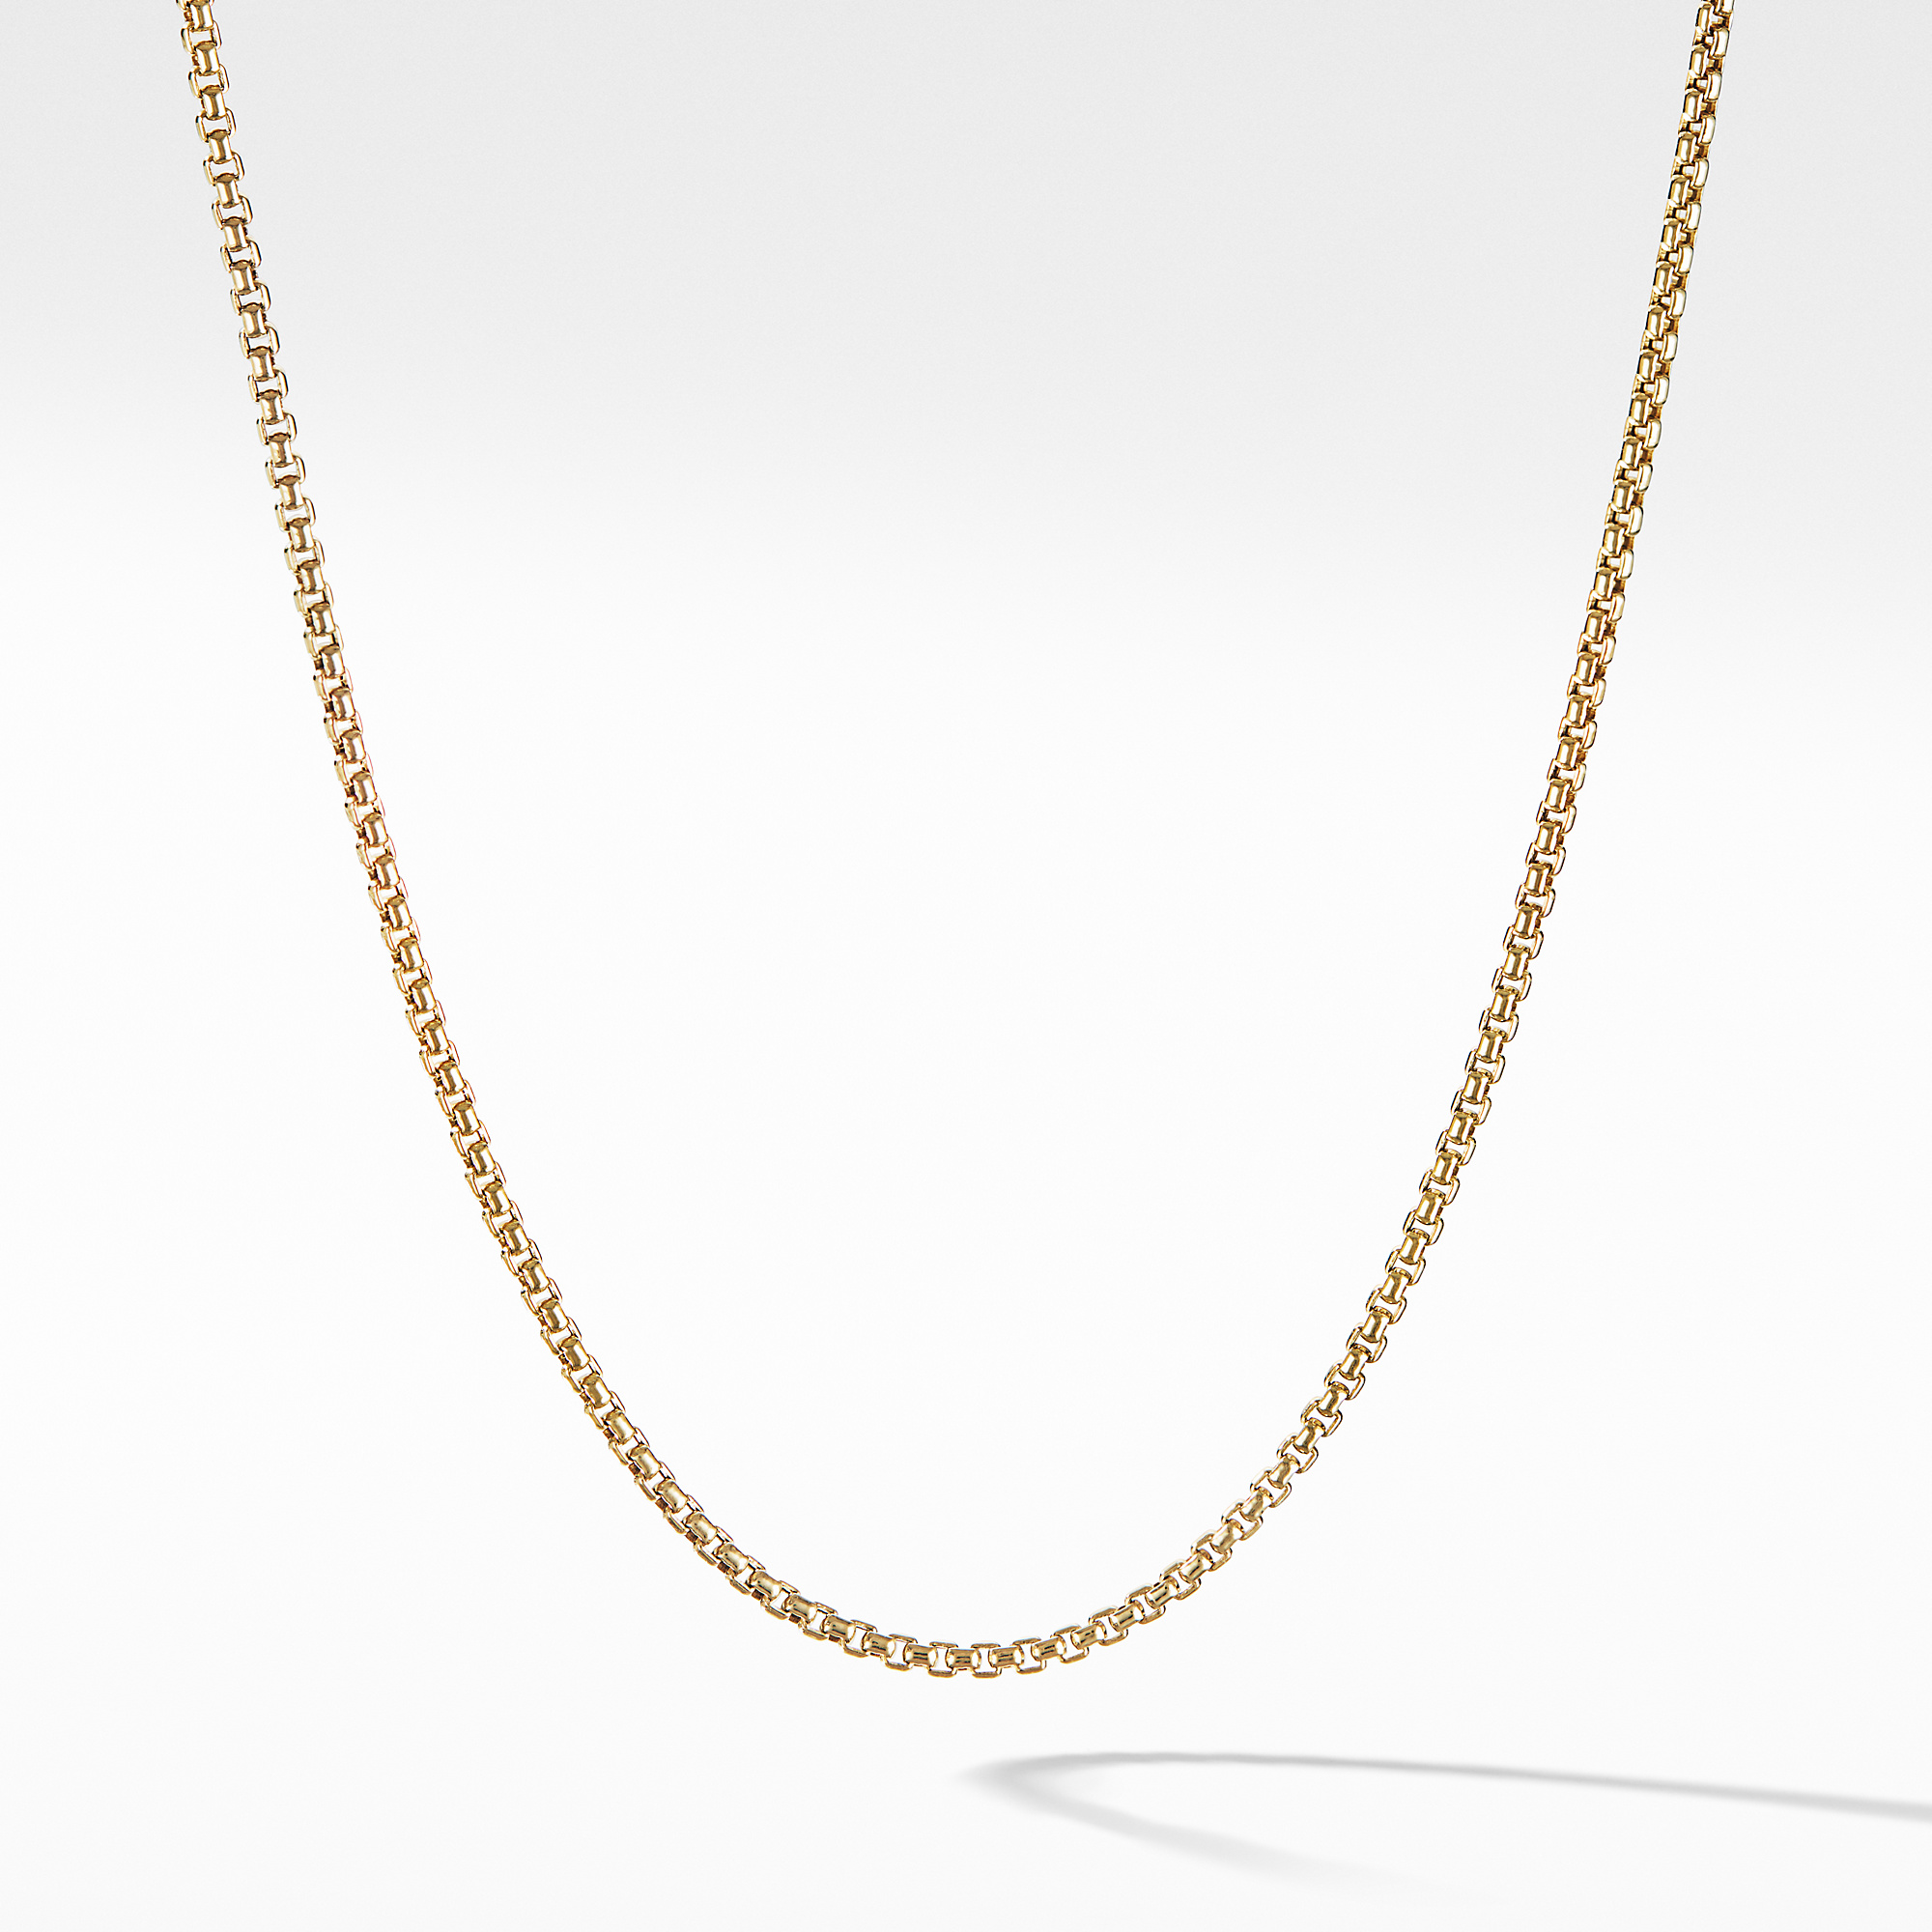 David Yurman Box Chain Necklace in 18K Yellow Gold, 36" 0